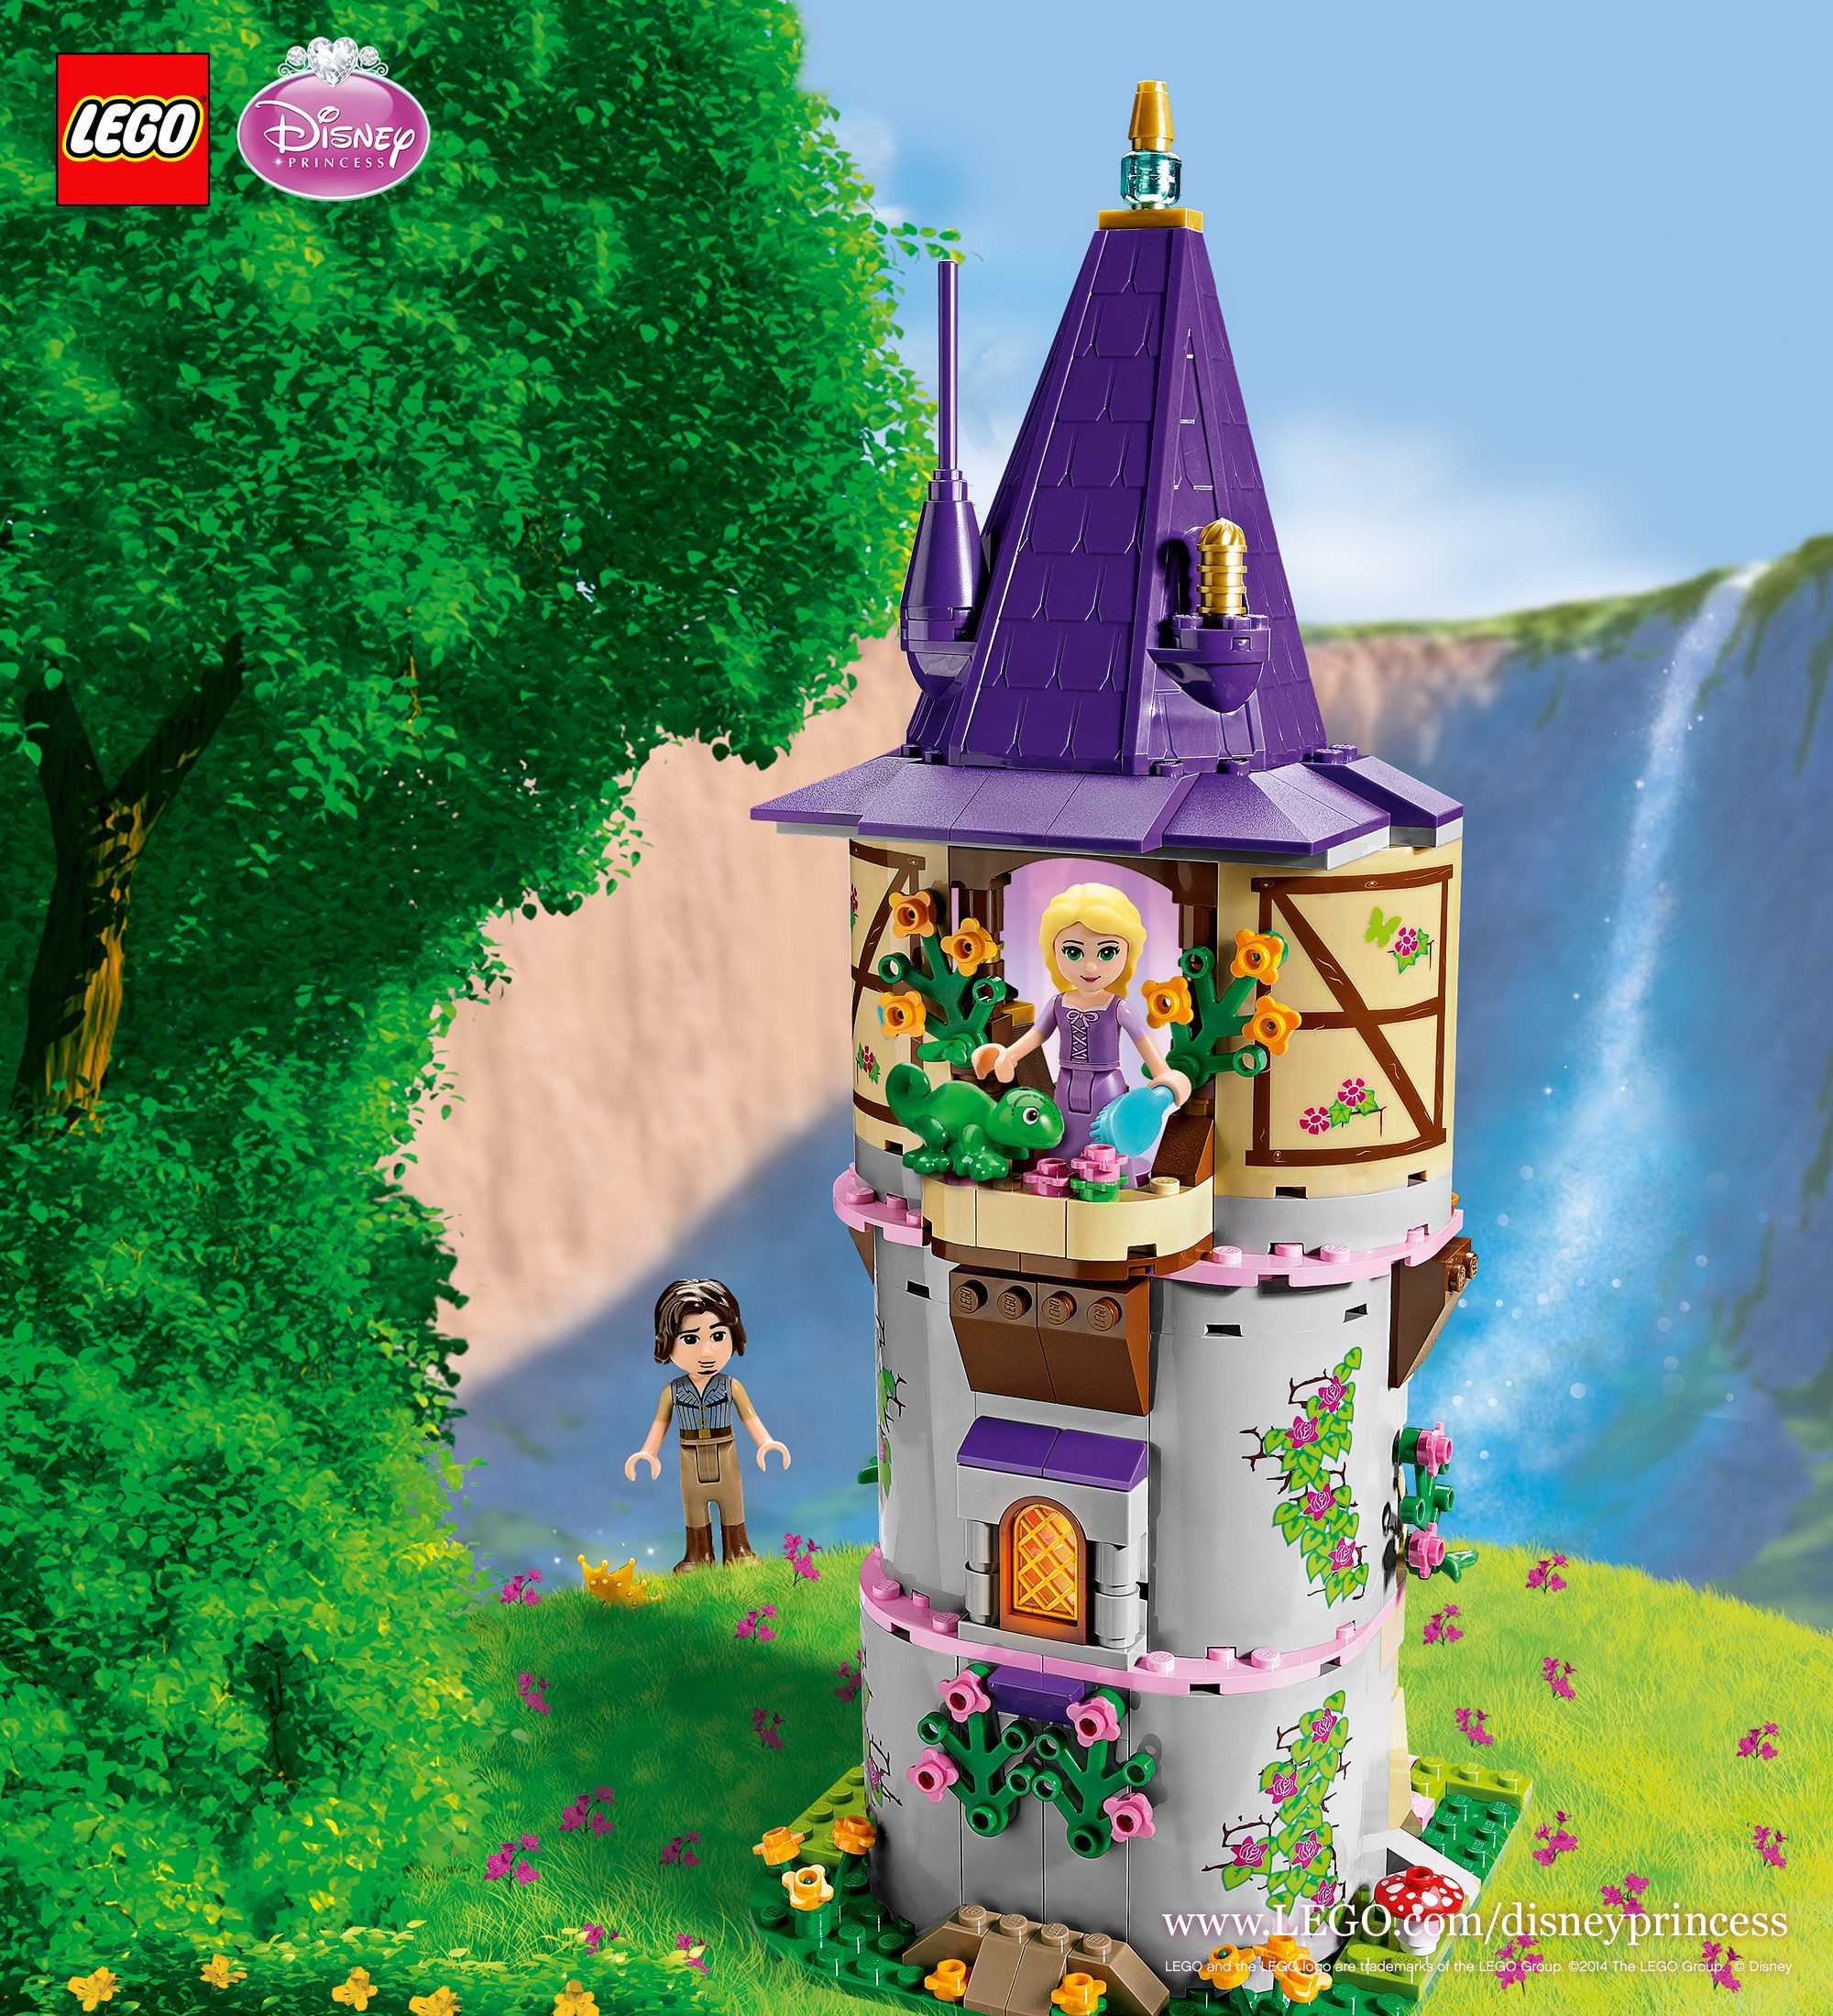 2000x2200 Rapunzel's Tower Wallpaper #Disney #LEGO #DisneyPrincess #Rapunzel # wallpaper